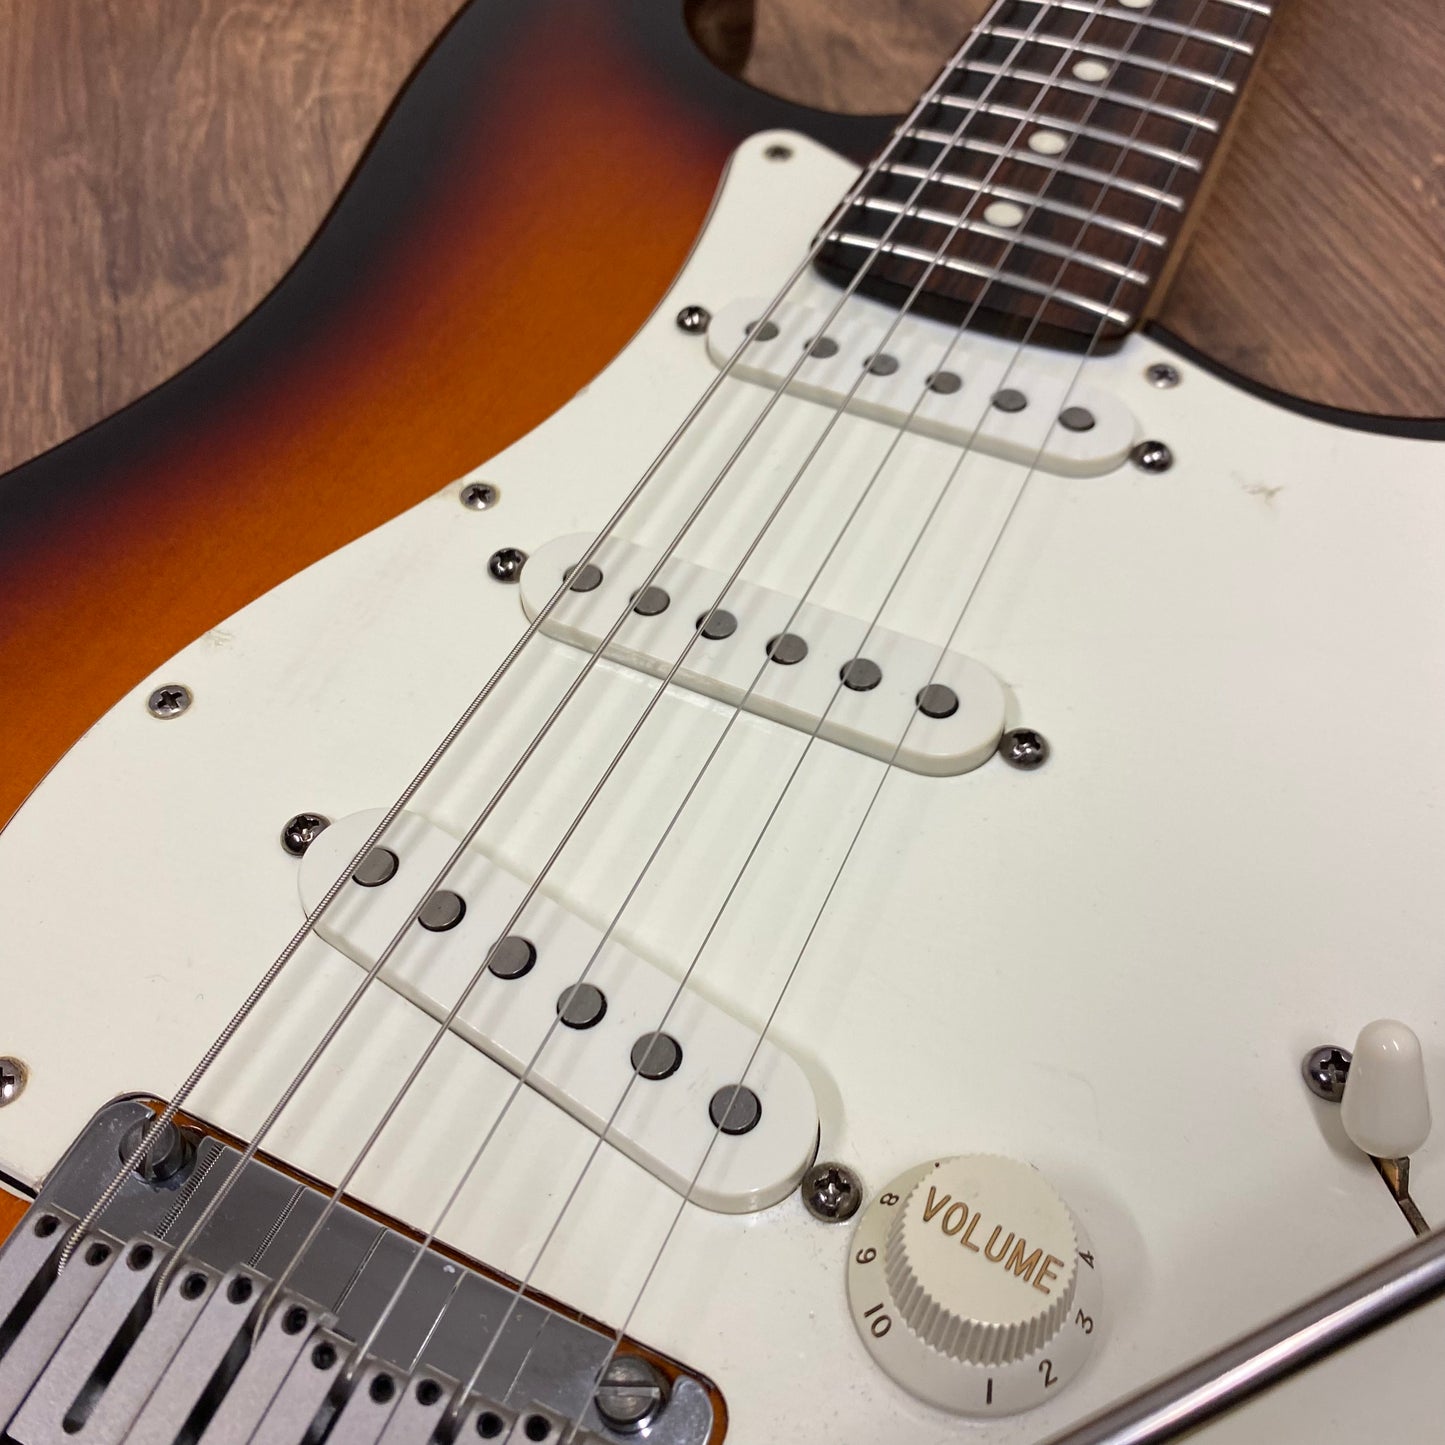 Pre-Owned Fender American Standard Stratocaster - 3-Tone Sunburst - 1997